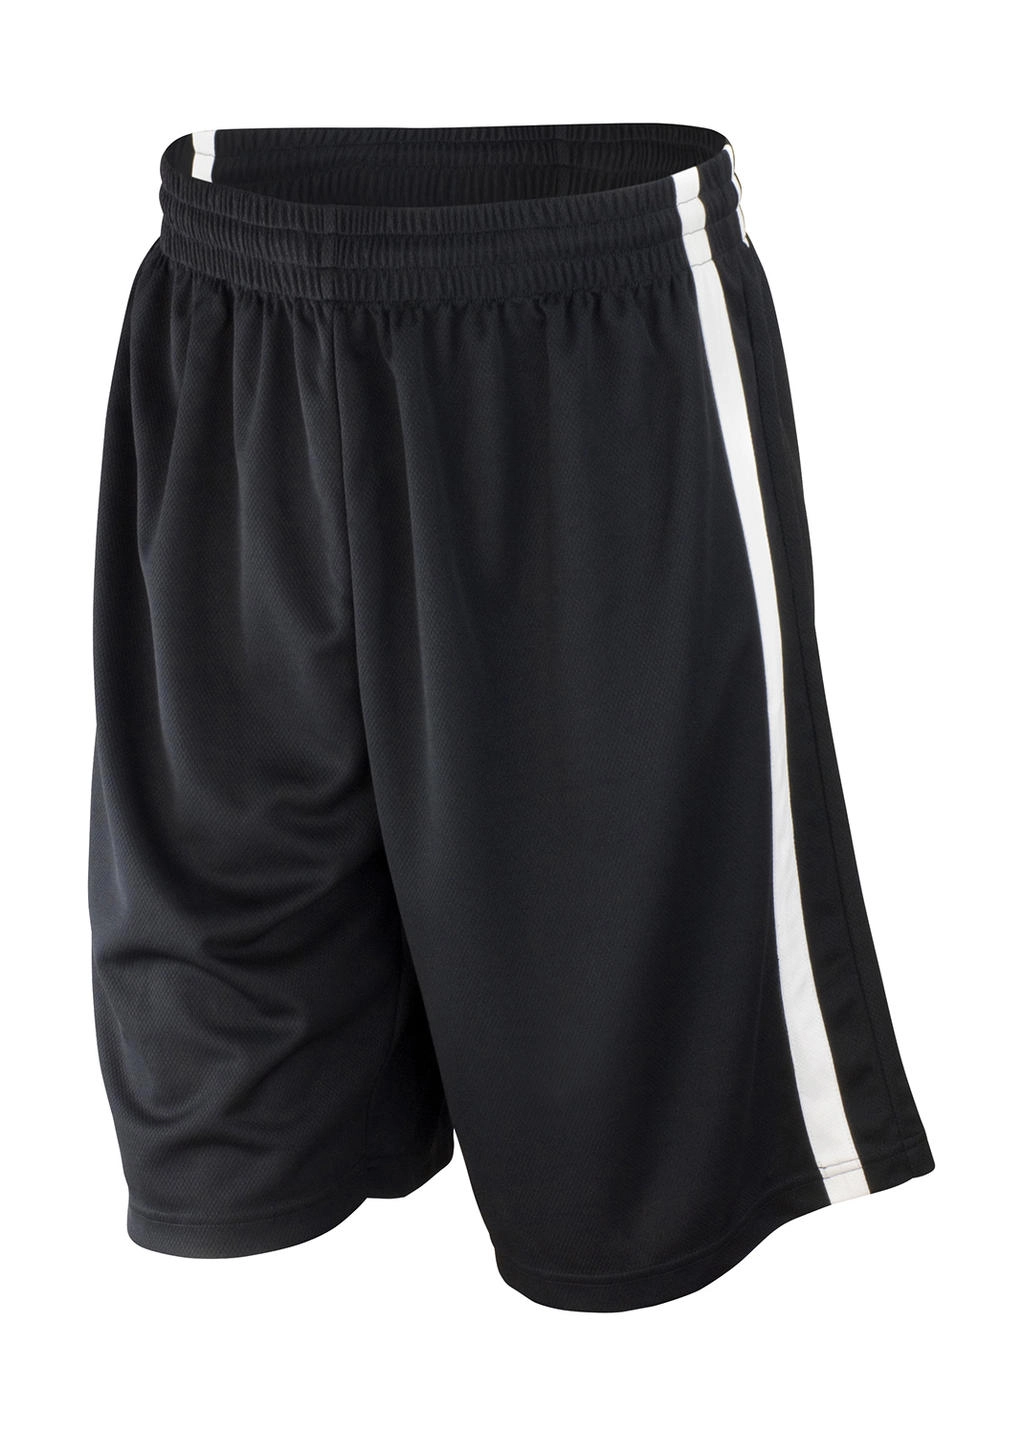 Men`s Quick Dry Basketball Shorts zum Besticken und Bedrucken in der Farbe Black/White mit Ihren Logo, Schriftzug oder Motiv.